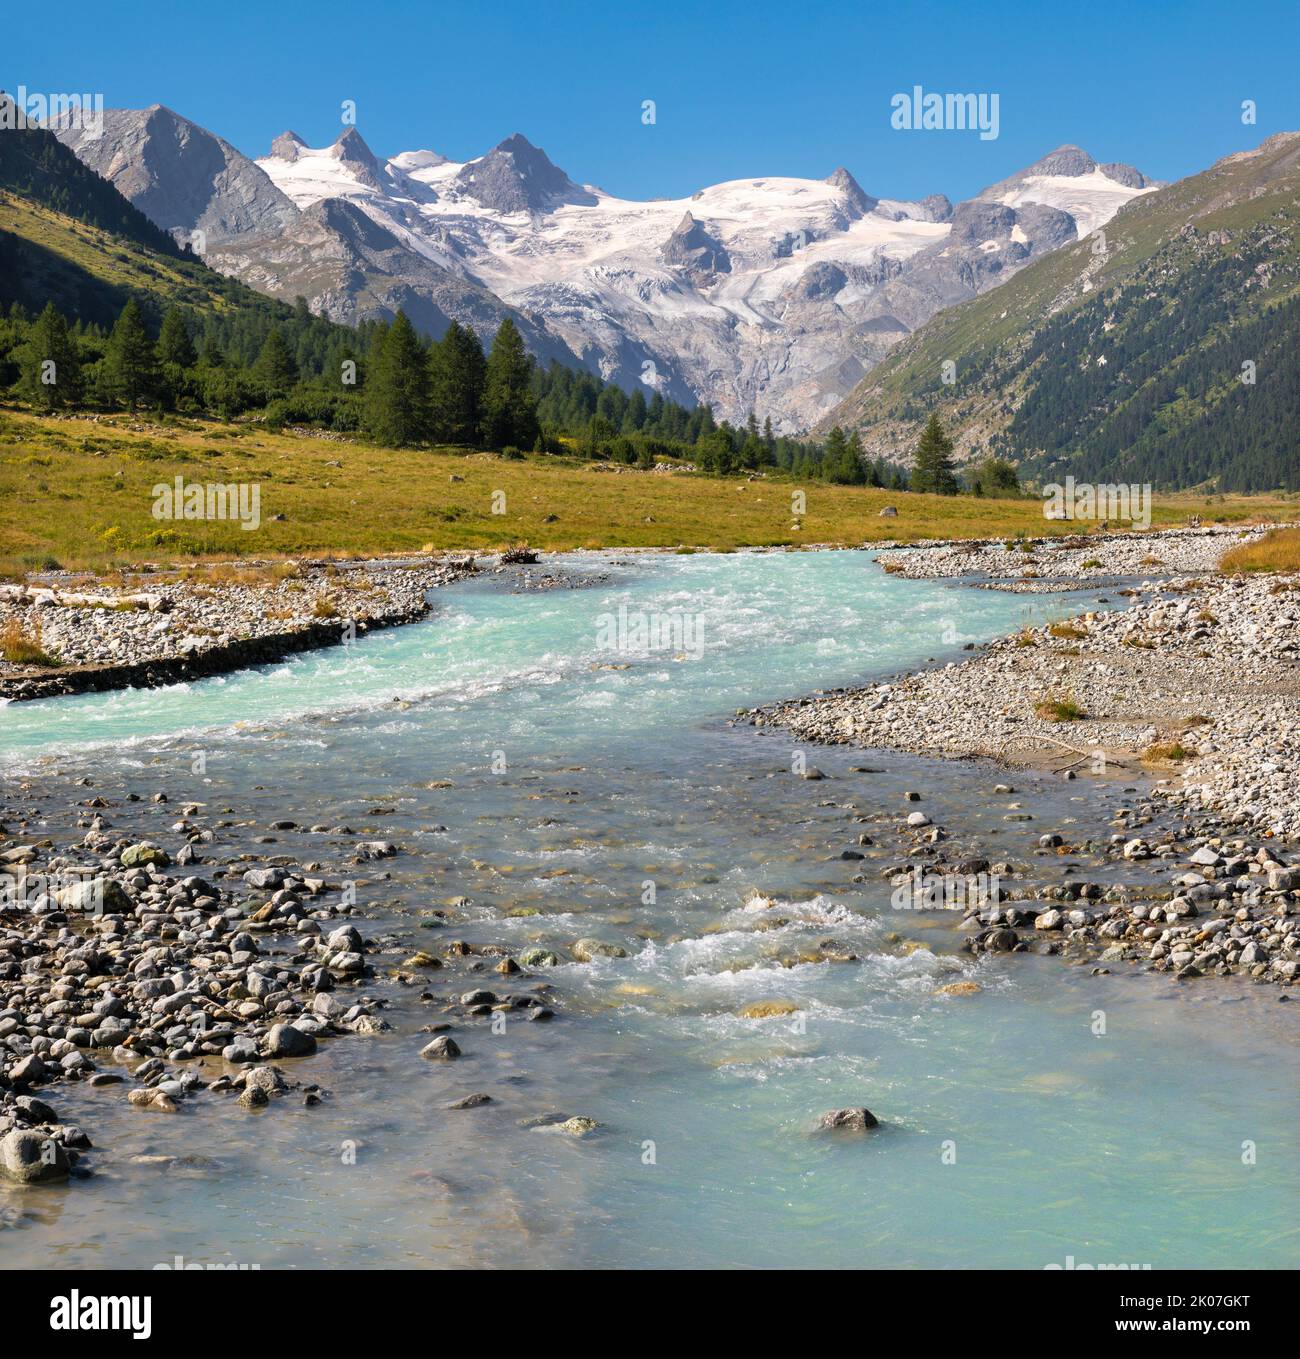 Suisse - la vallée de Roseg sous les sommets il Caputschin, la Muongia, Forcola Alta et le glacier de Roseg. Banque D'Images